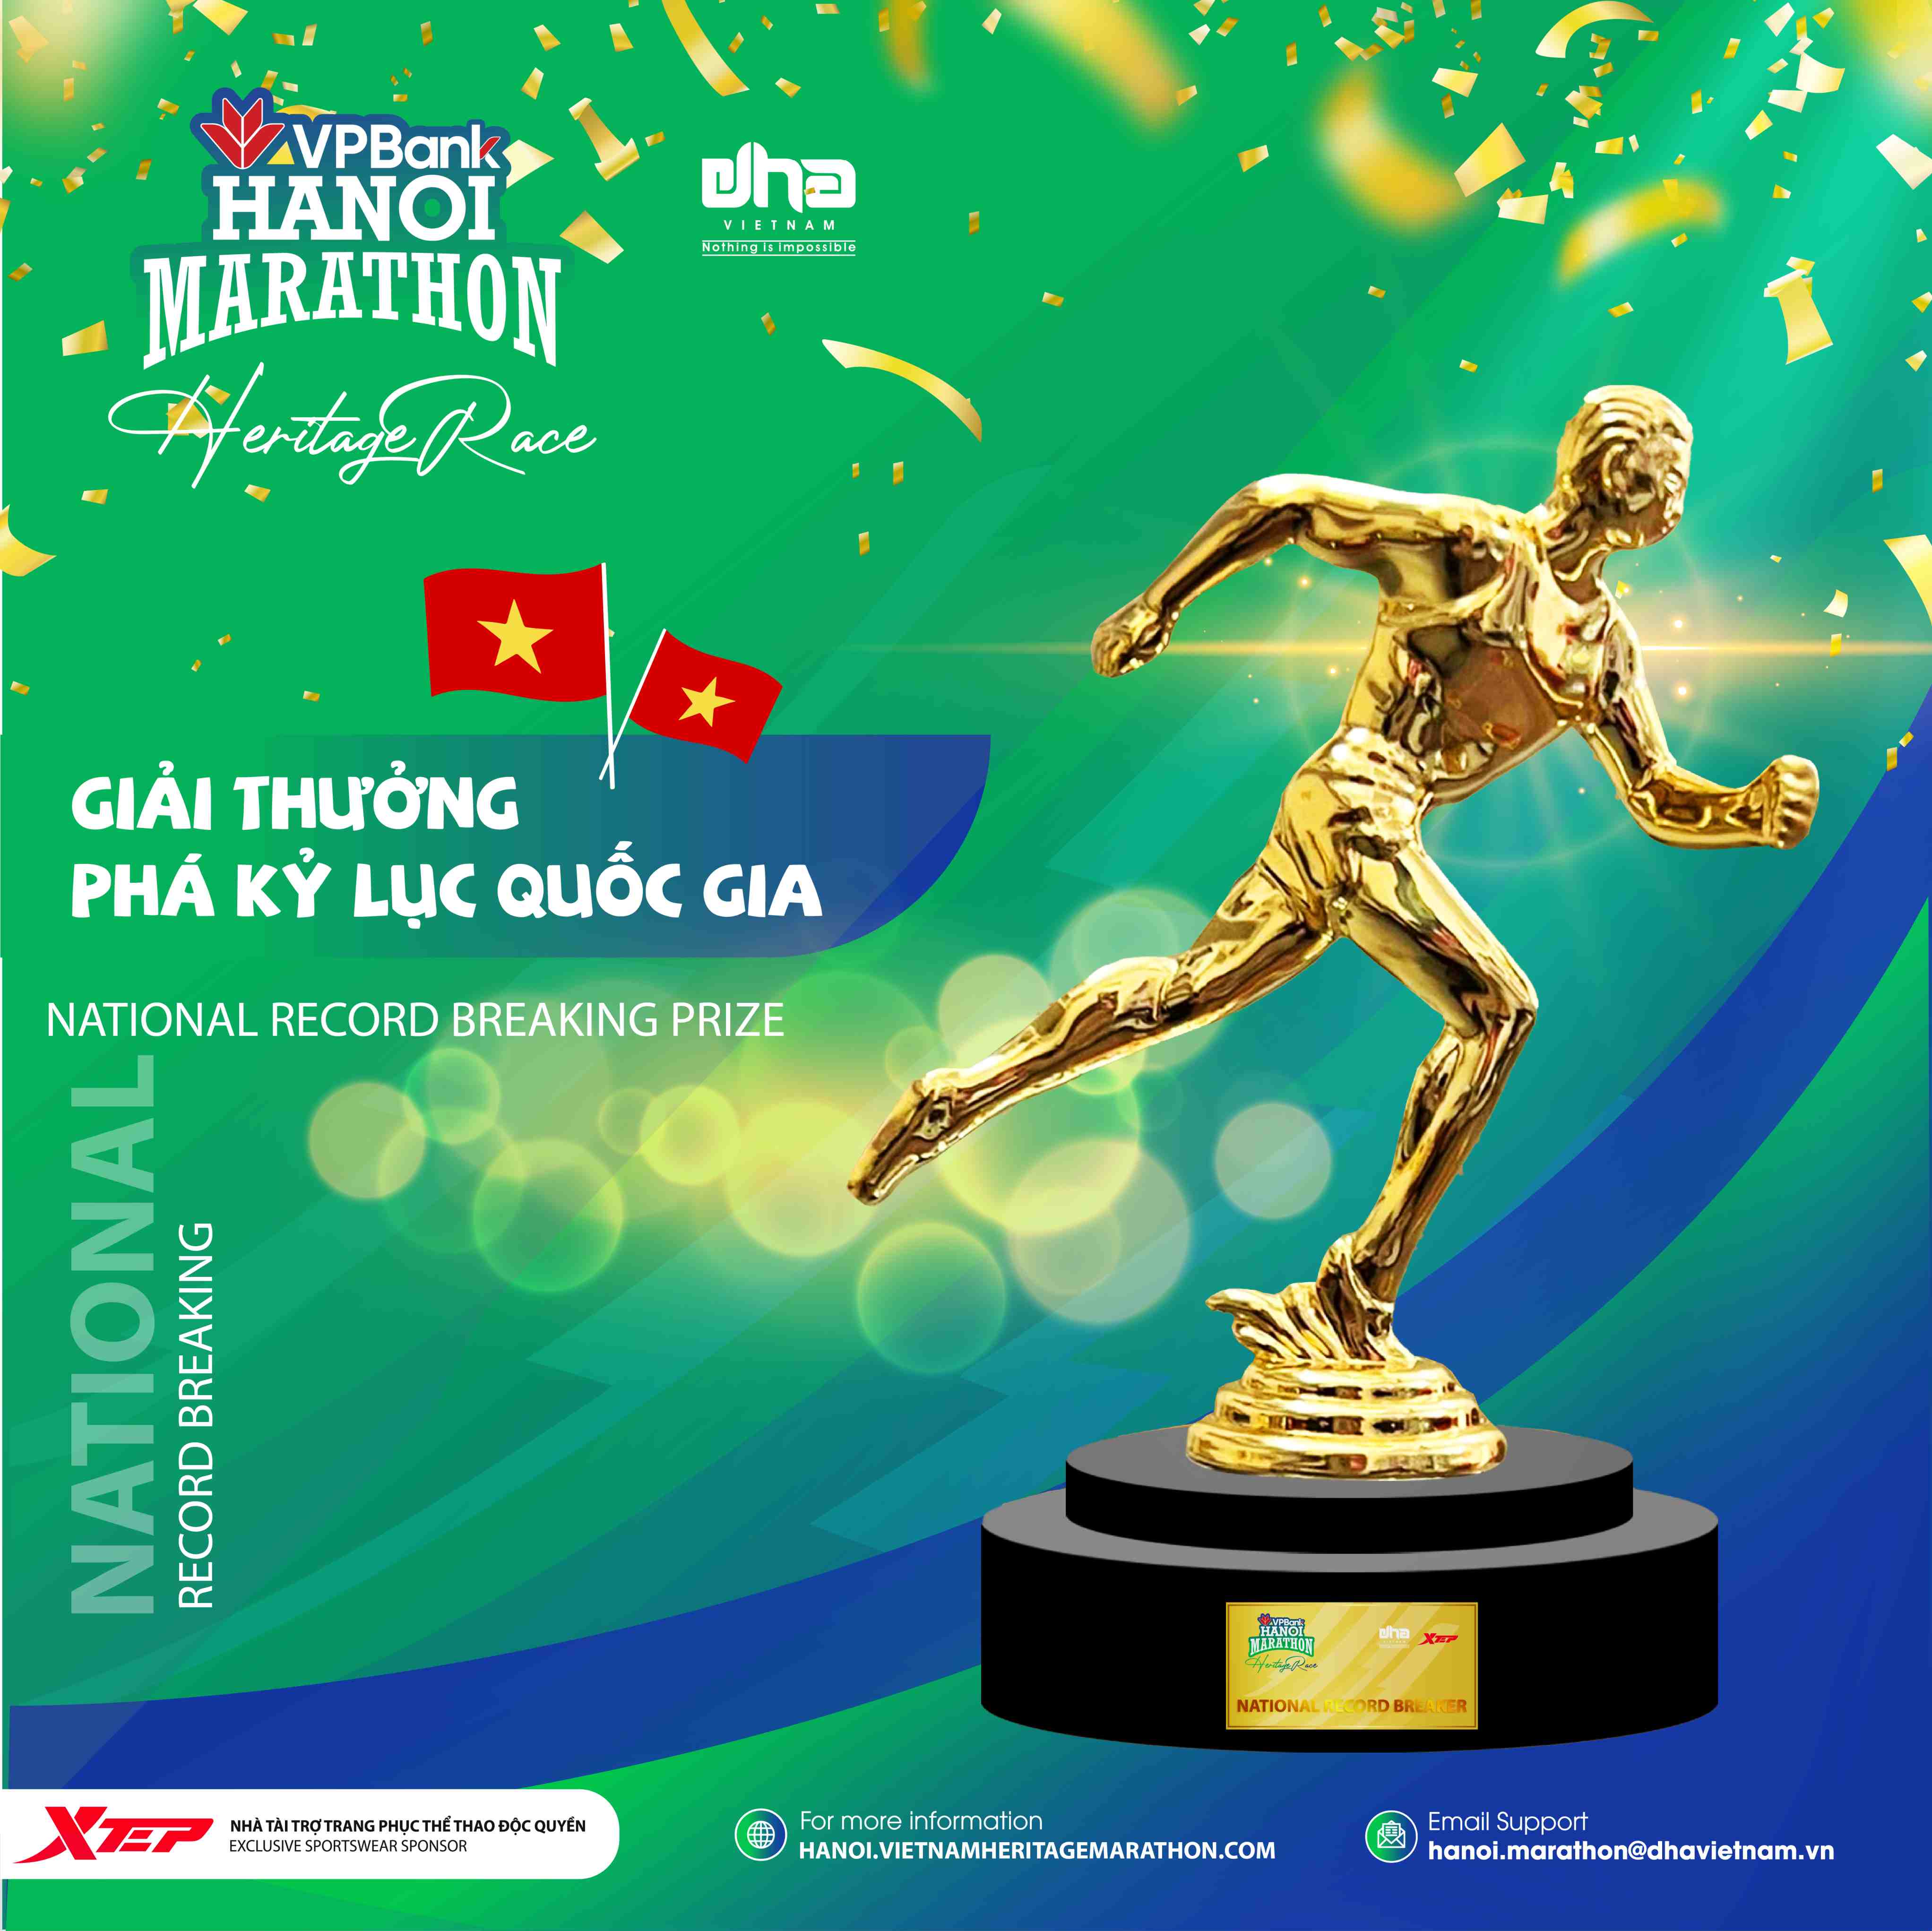 VPBank Hanoi Marathon 2022: Giải Phá Kỷ Lục Quốc Gia Và Cúp “Bước Chạy Vàng”